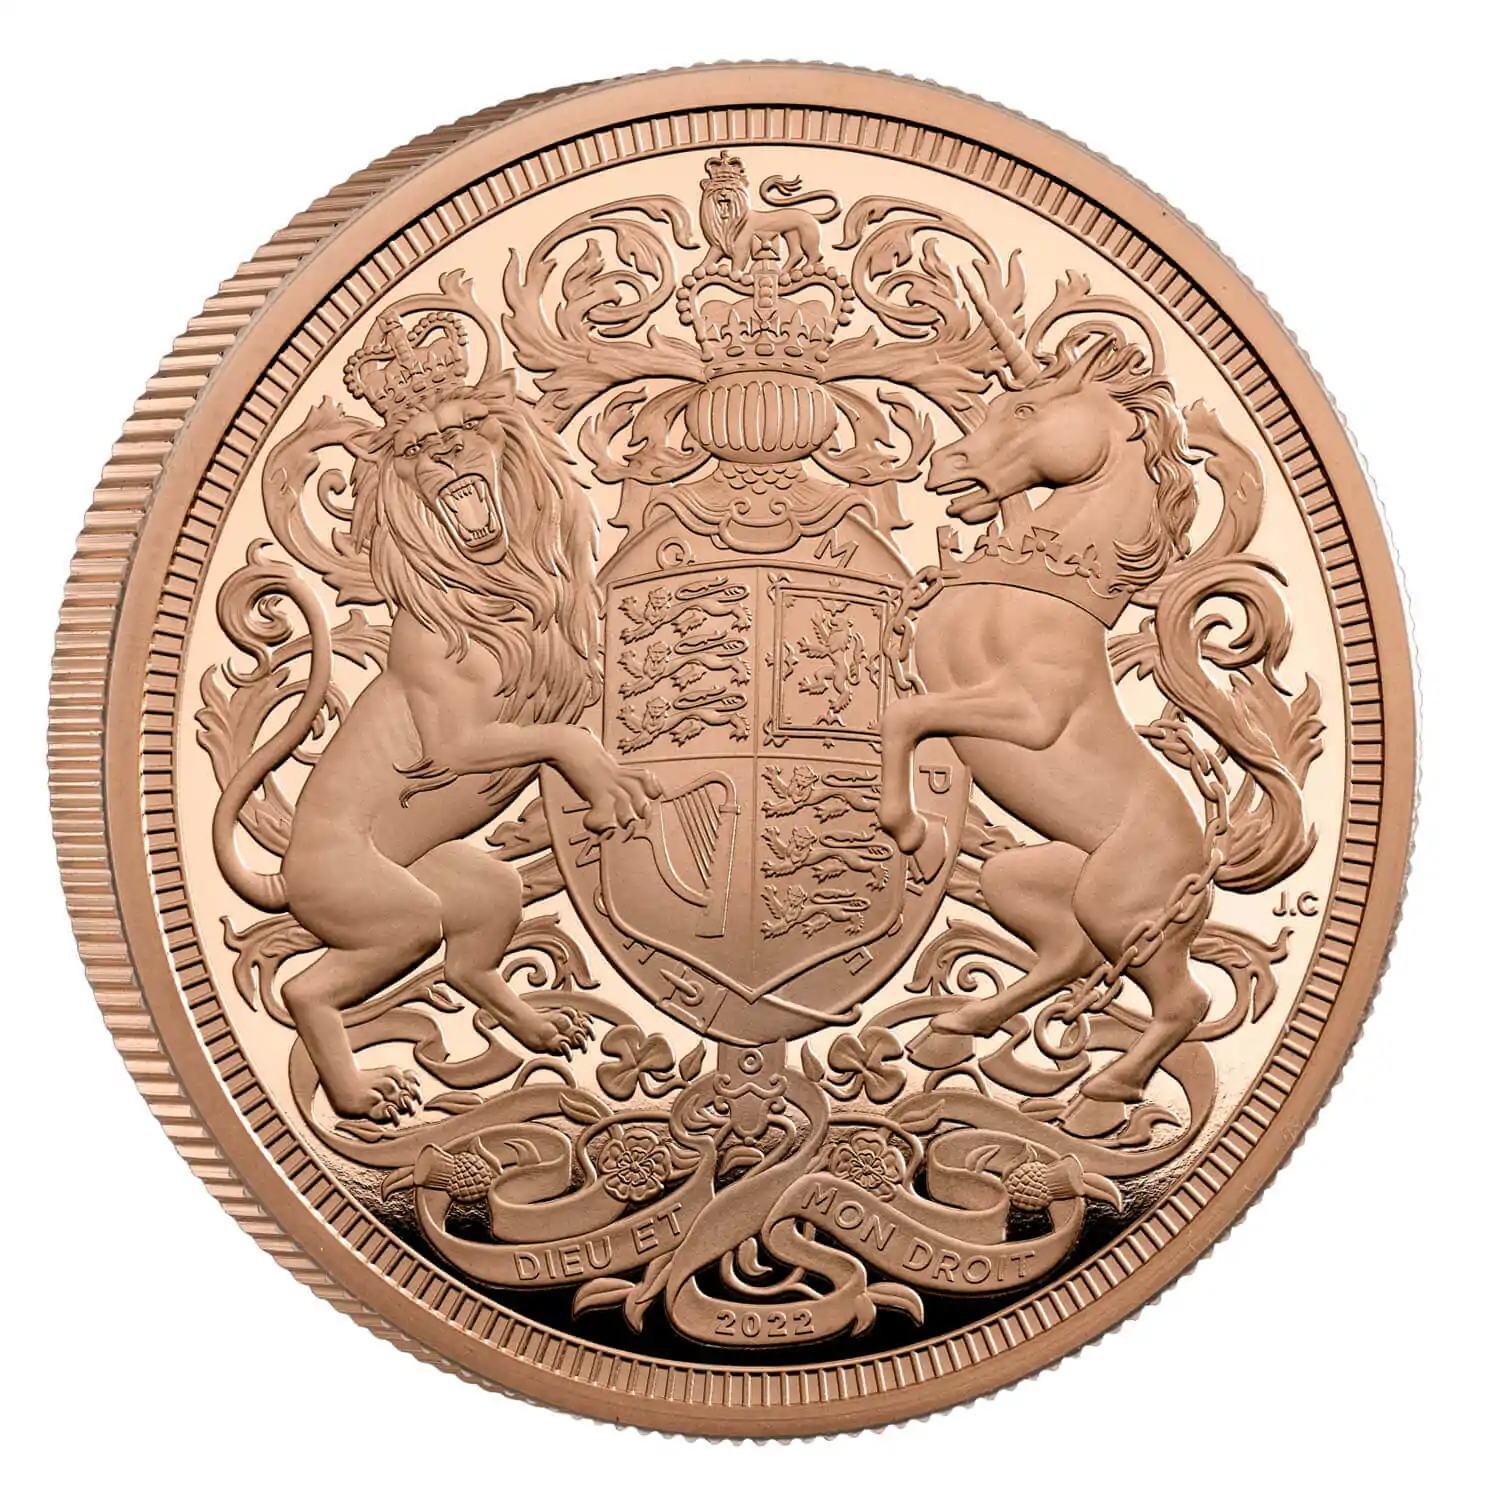 Pięć Brytyjskich Suwerenów 2022 - Memoriał Królowej Elżbiety II Proof - złota moneta